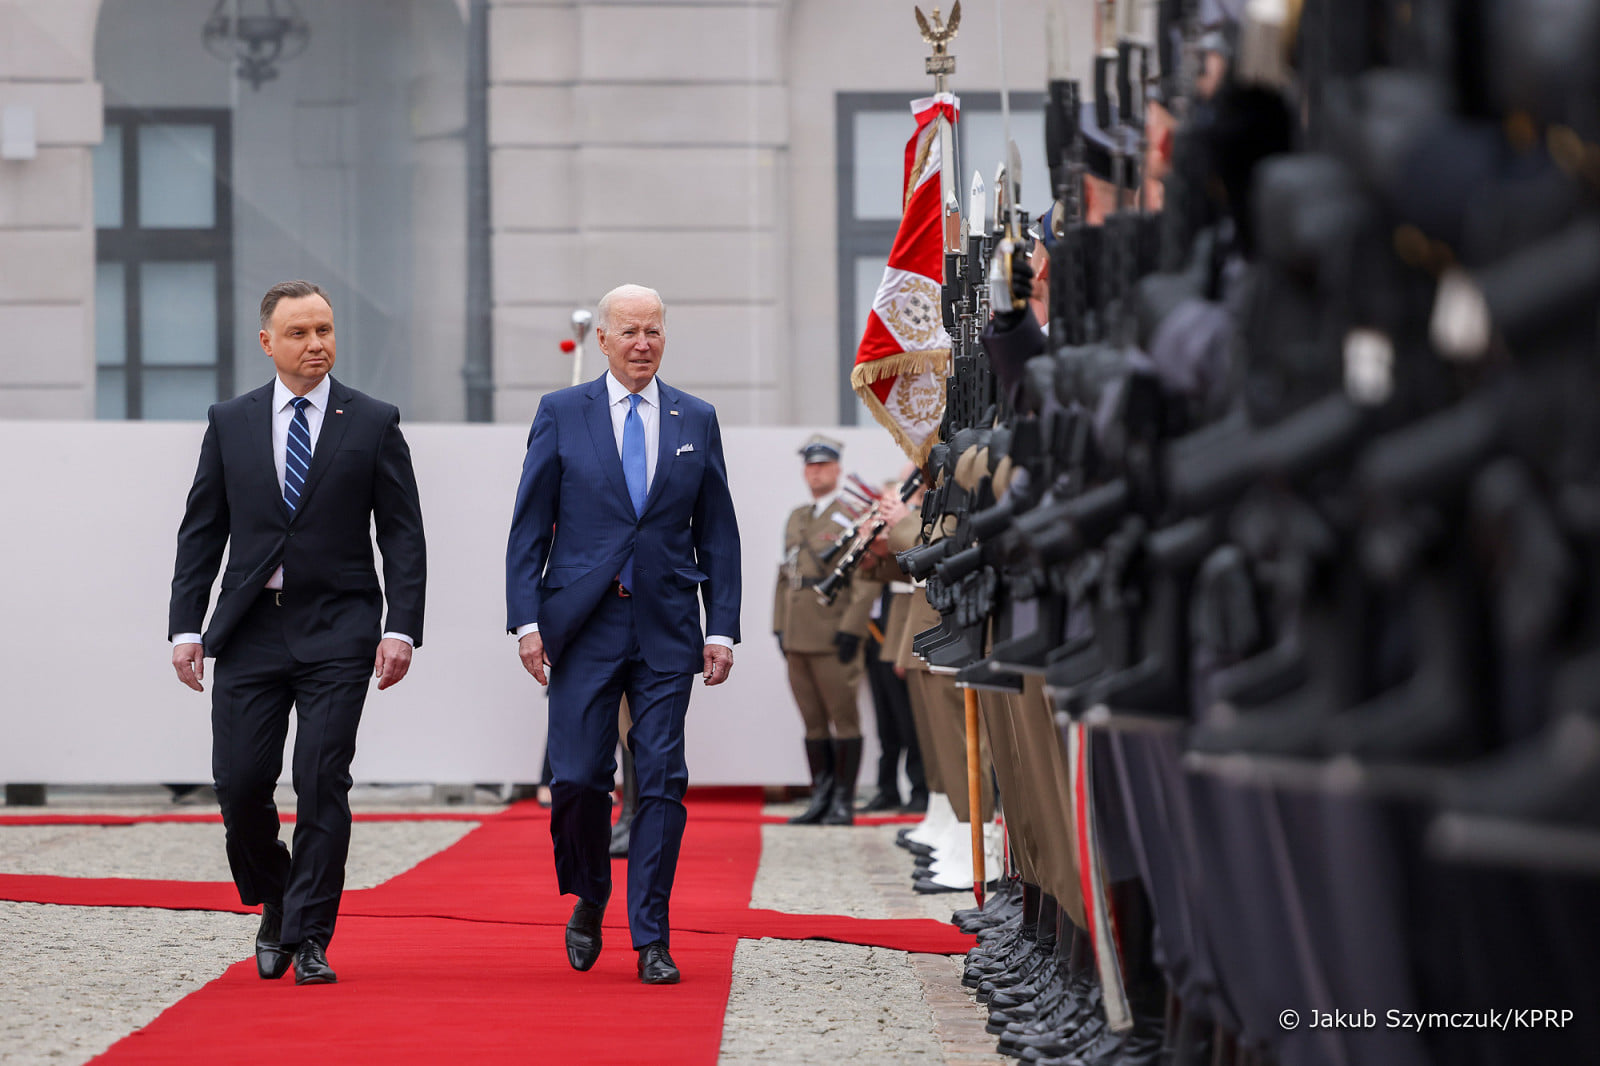 Prezydent Joe Biden podczas spotkania z Prezydentem Andrzejem Dudą: „Artykuł 5. Traktatu Północnoatlantyckiego jest świętym zobowiązaniem. Możecie na nas polegać”. Źródło